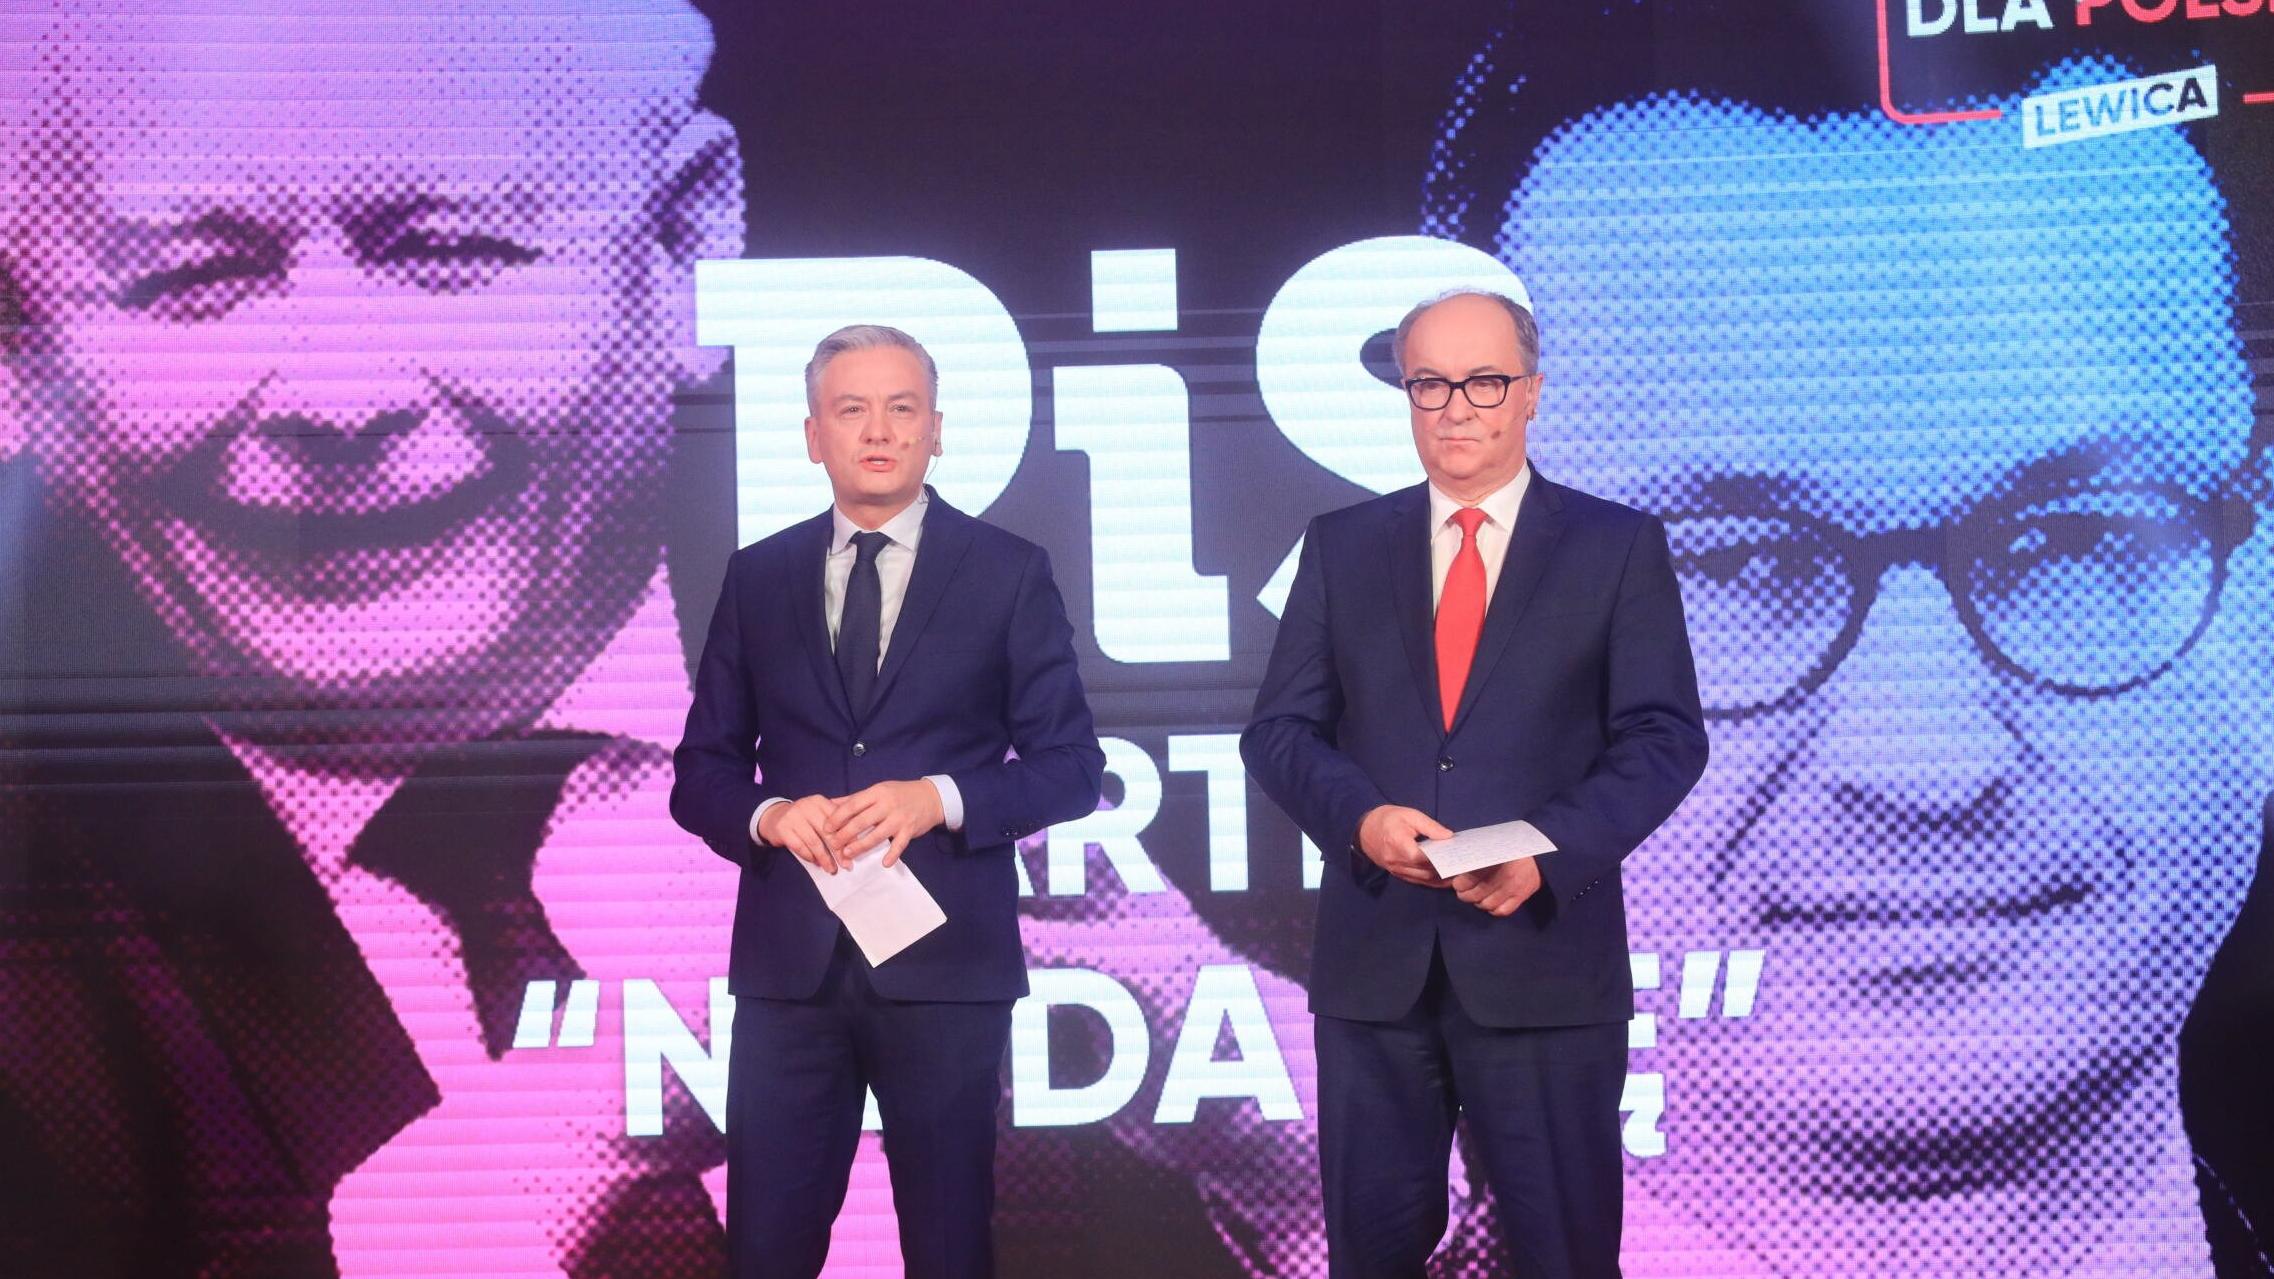 Dwaj mężczyźni (Czarzasty i Biedroń) na scenie, w tle portrety Kaczyńskiego i Morawieckiego